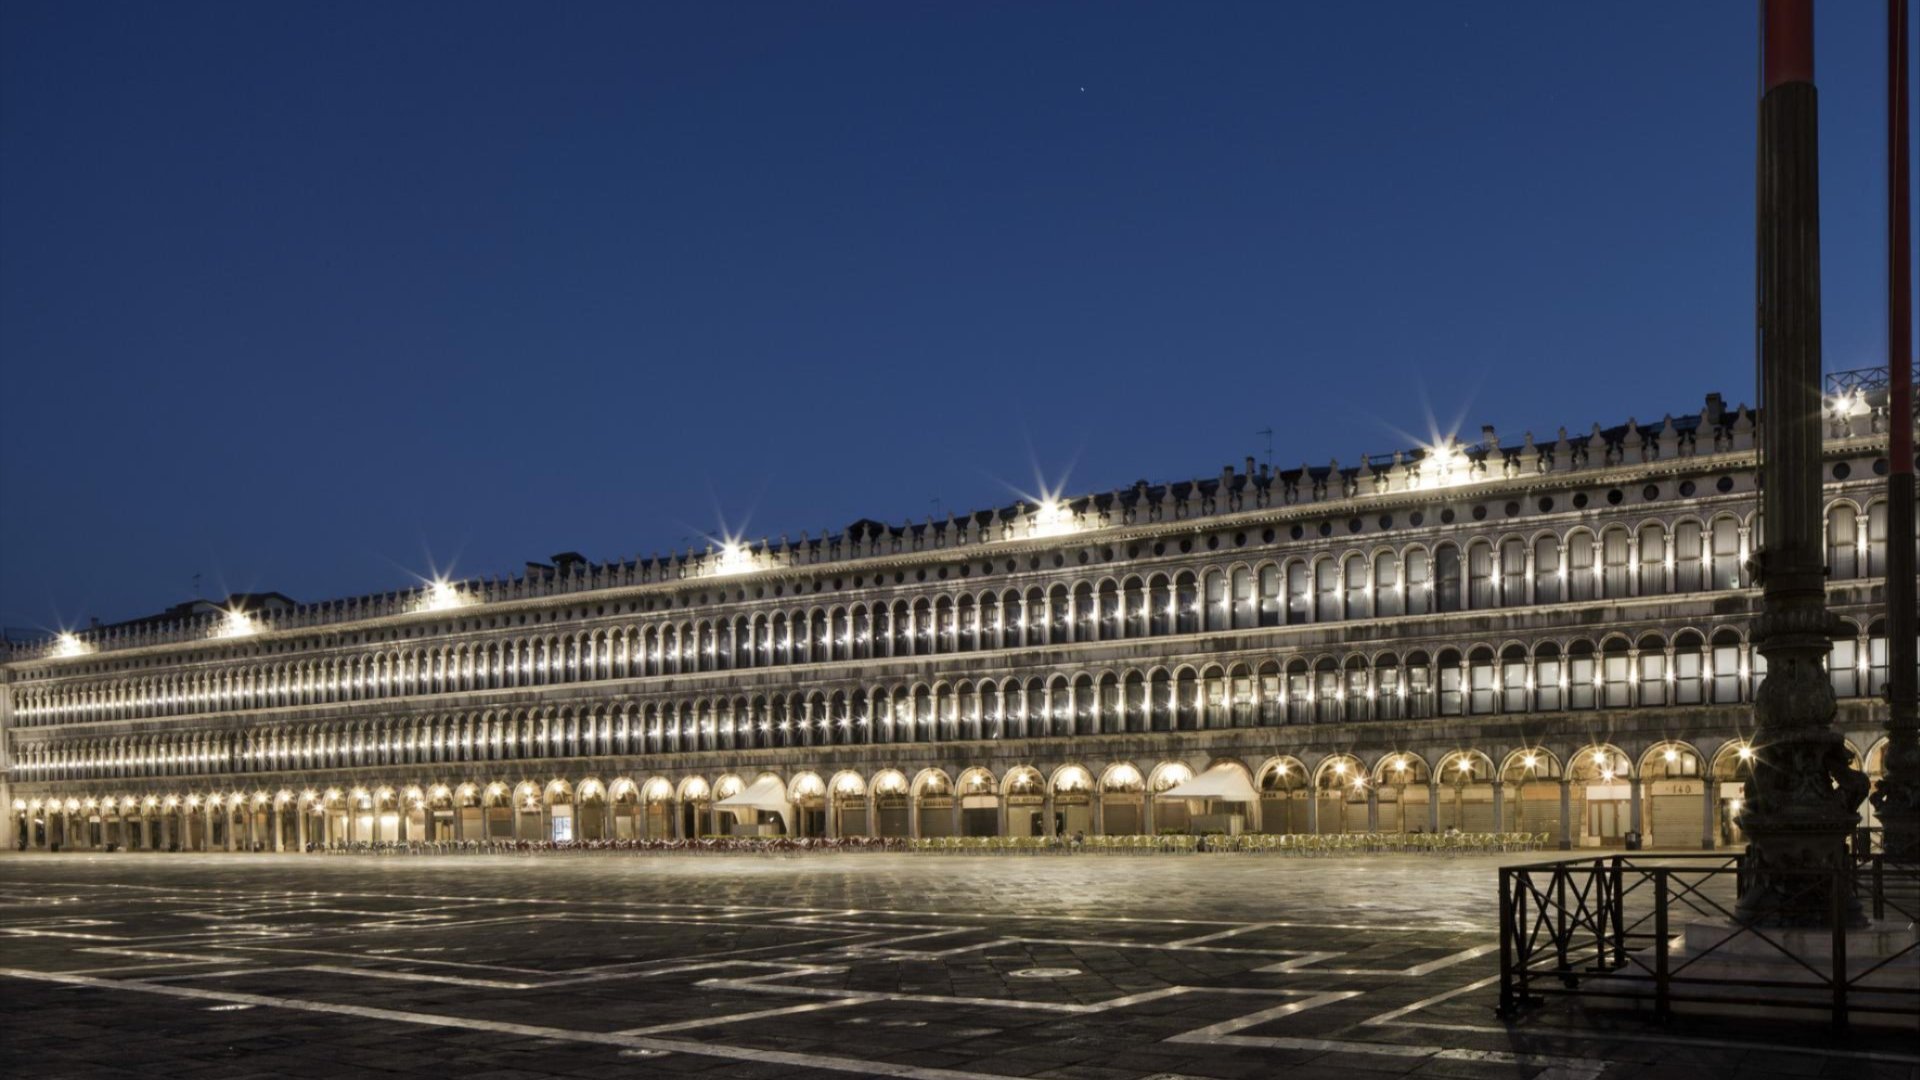 Le Procuratie Vecchie in Piazza San Marco aperte per l’Art Night 2022 con tre mostre straordinarie